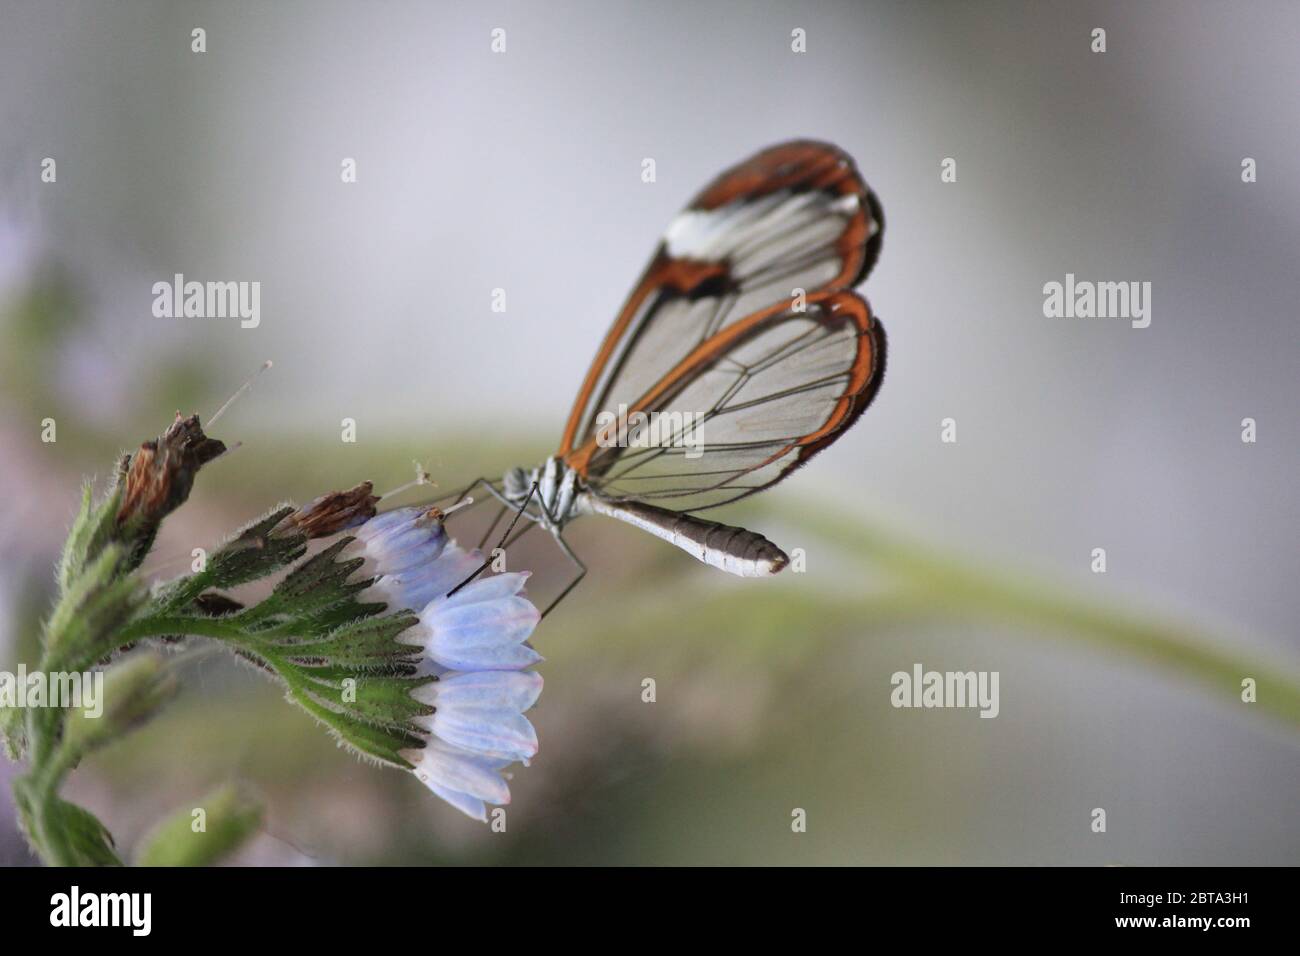 Glasswing butterfly Foto de stock